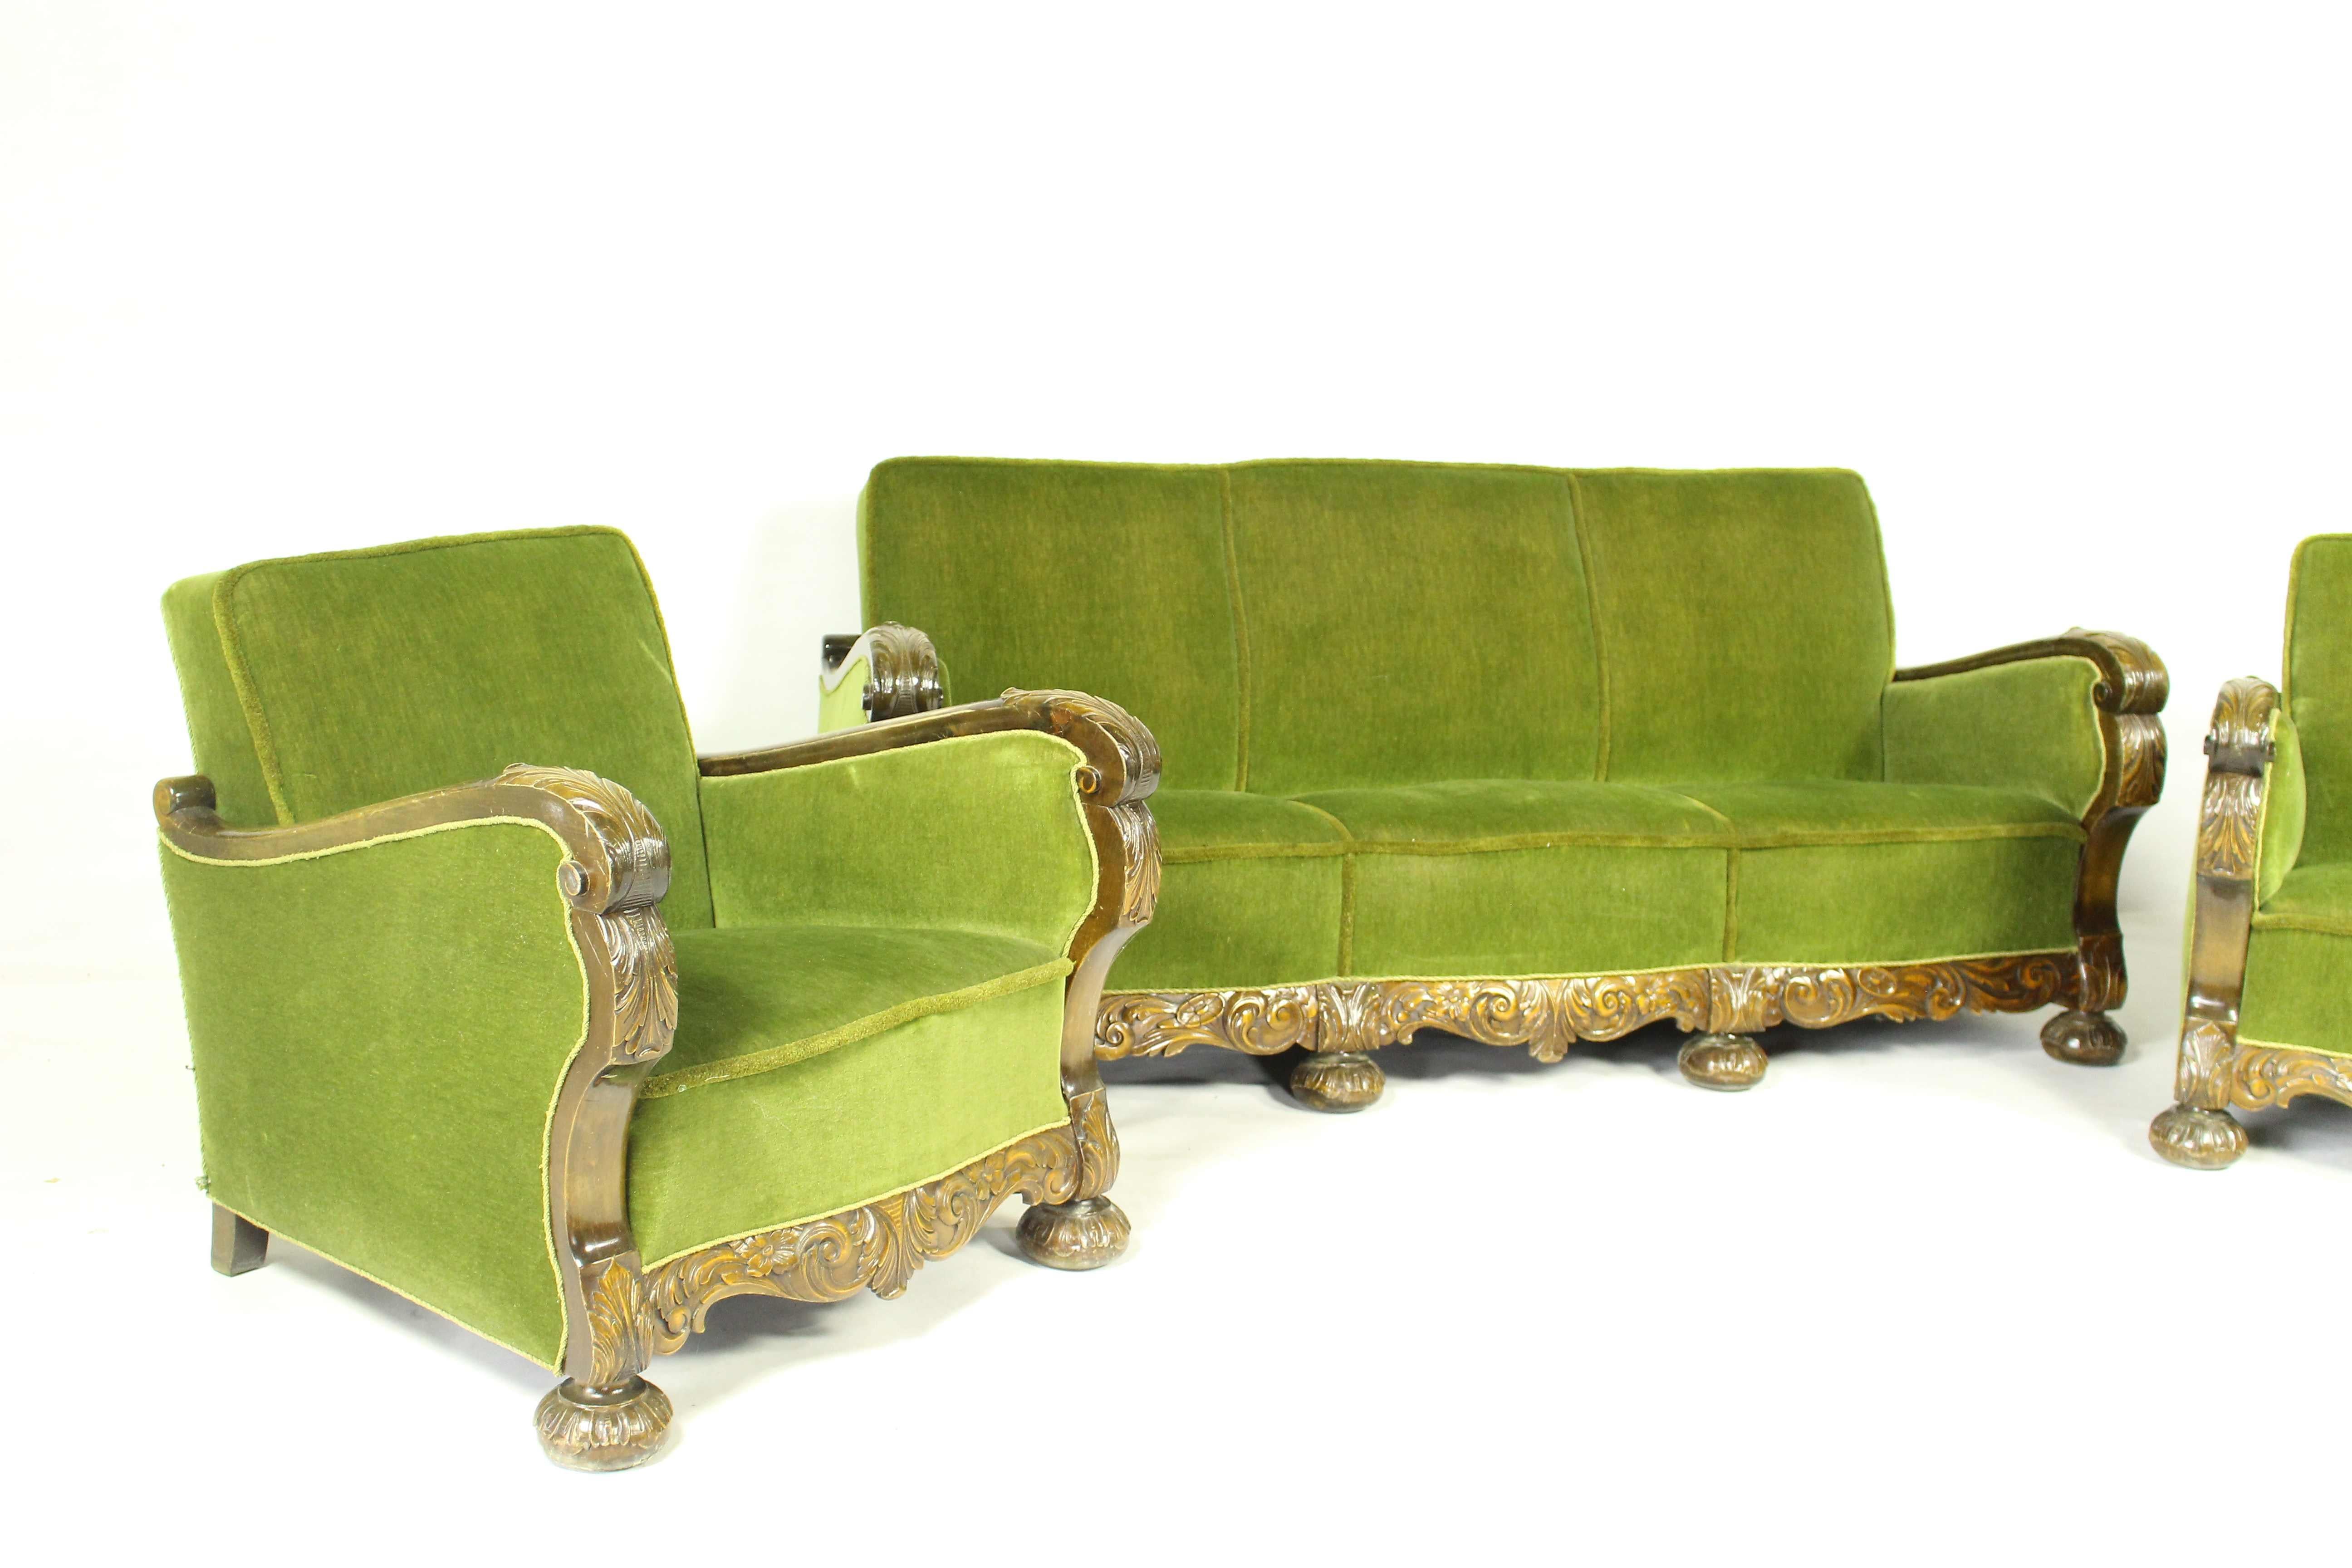 Gepolstertes Sofa und Sessel aus grünem Samt im Art Deco-Stil mit Armlehnen und Beinen aus Holz.
Gepolstert mit grünem Samt (empfohlener Ersatz).
Hergestellt in Dänemark im 20. Jahrhundert.
Sitz und Rückenlehne mit Federn.